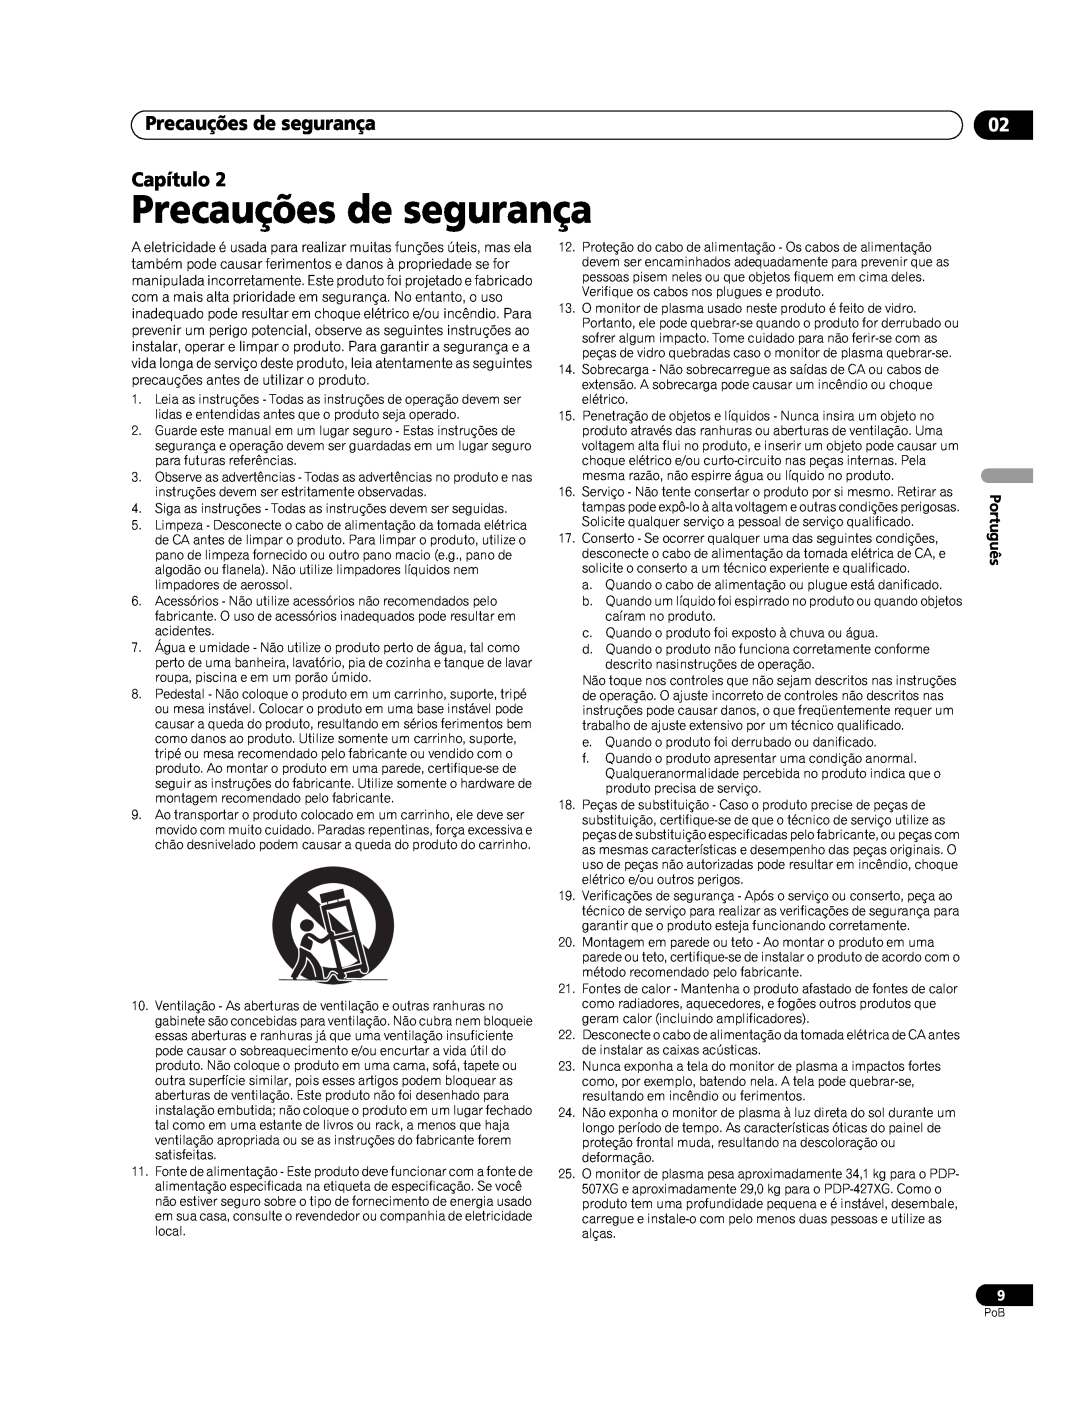 Pioneer PDP-507XG, PDP-427XG manual Precauções de segurança Capítulo, Português 